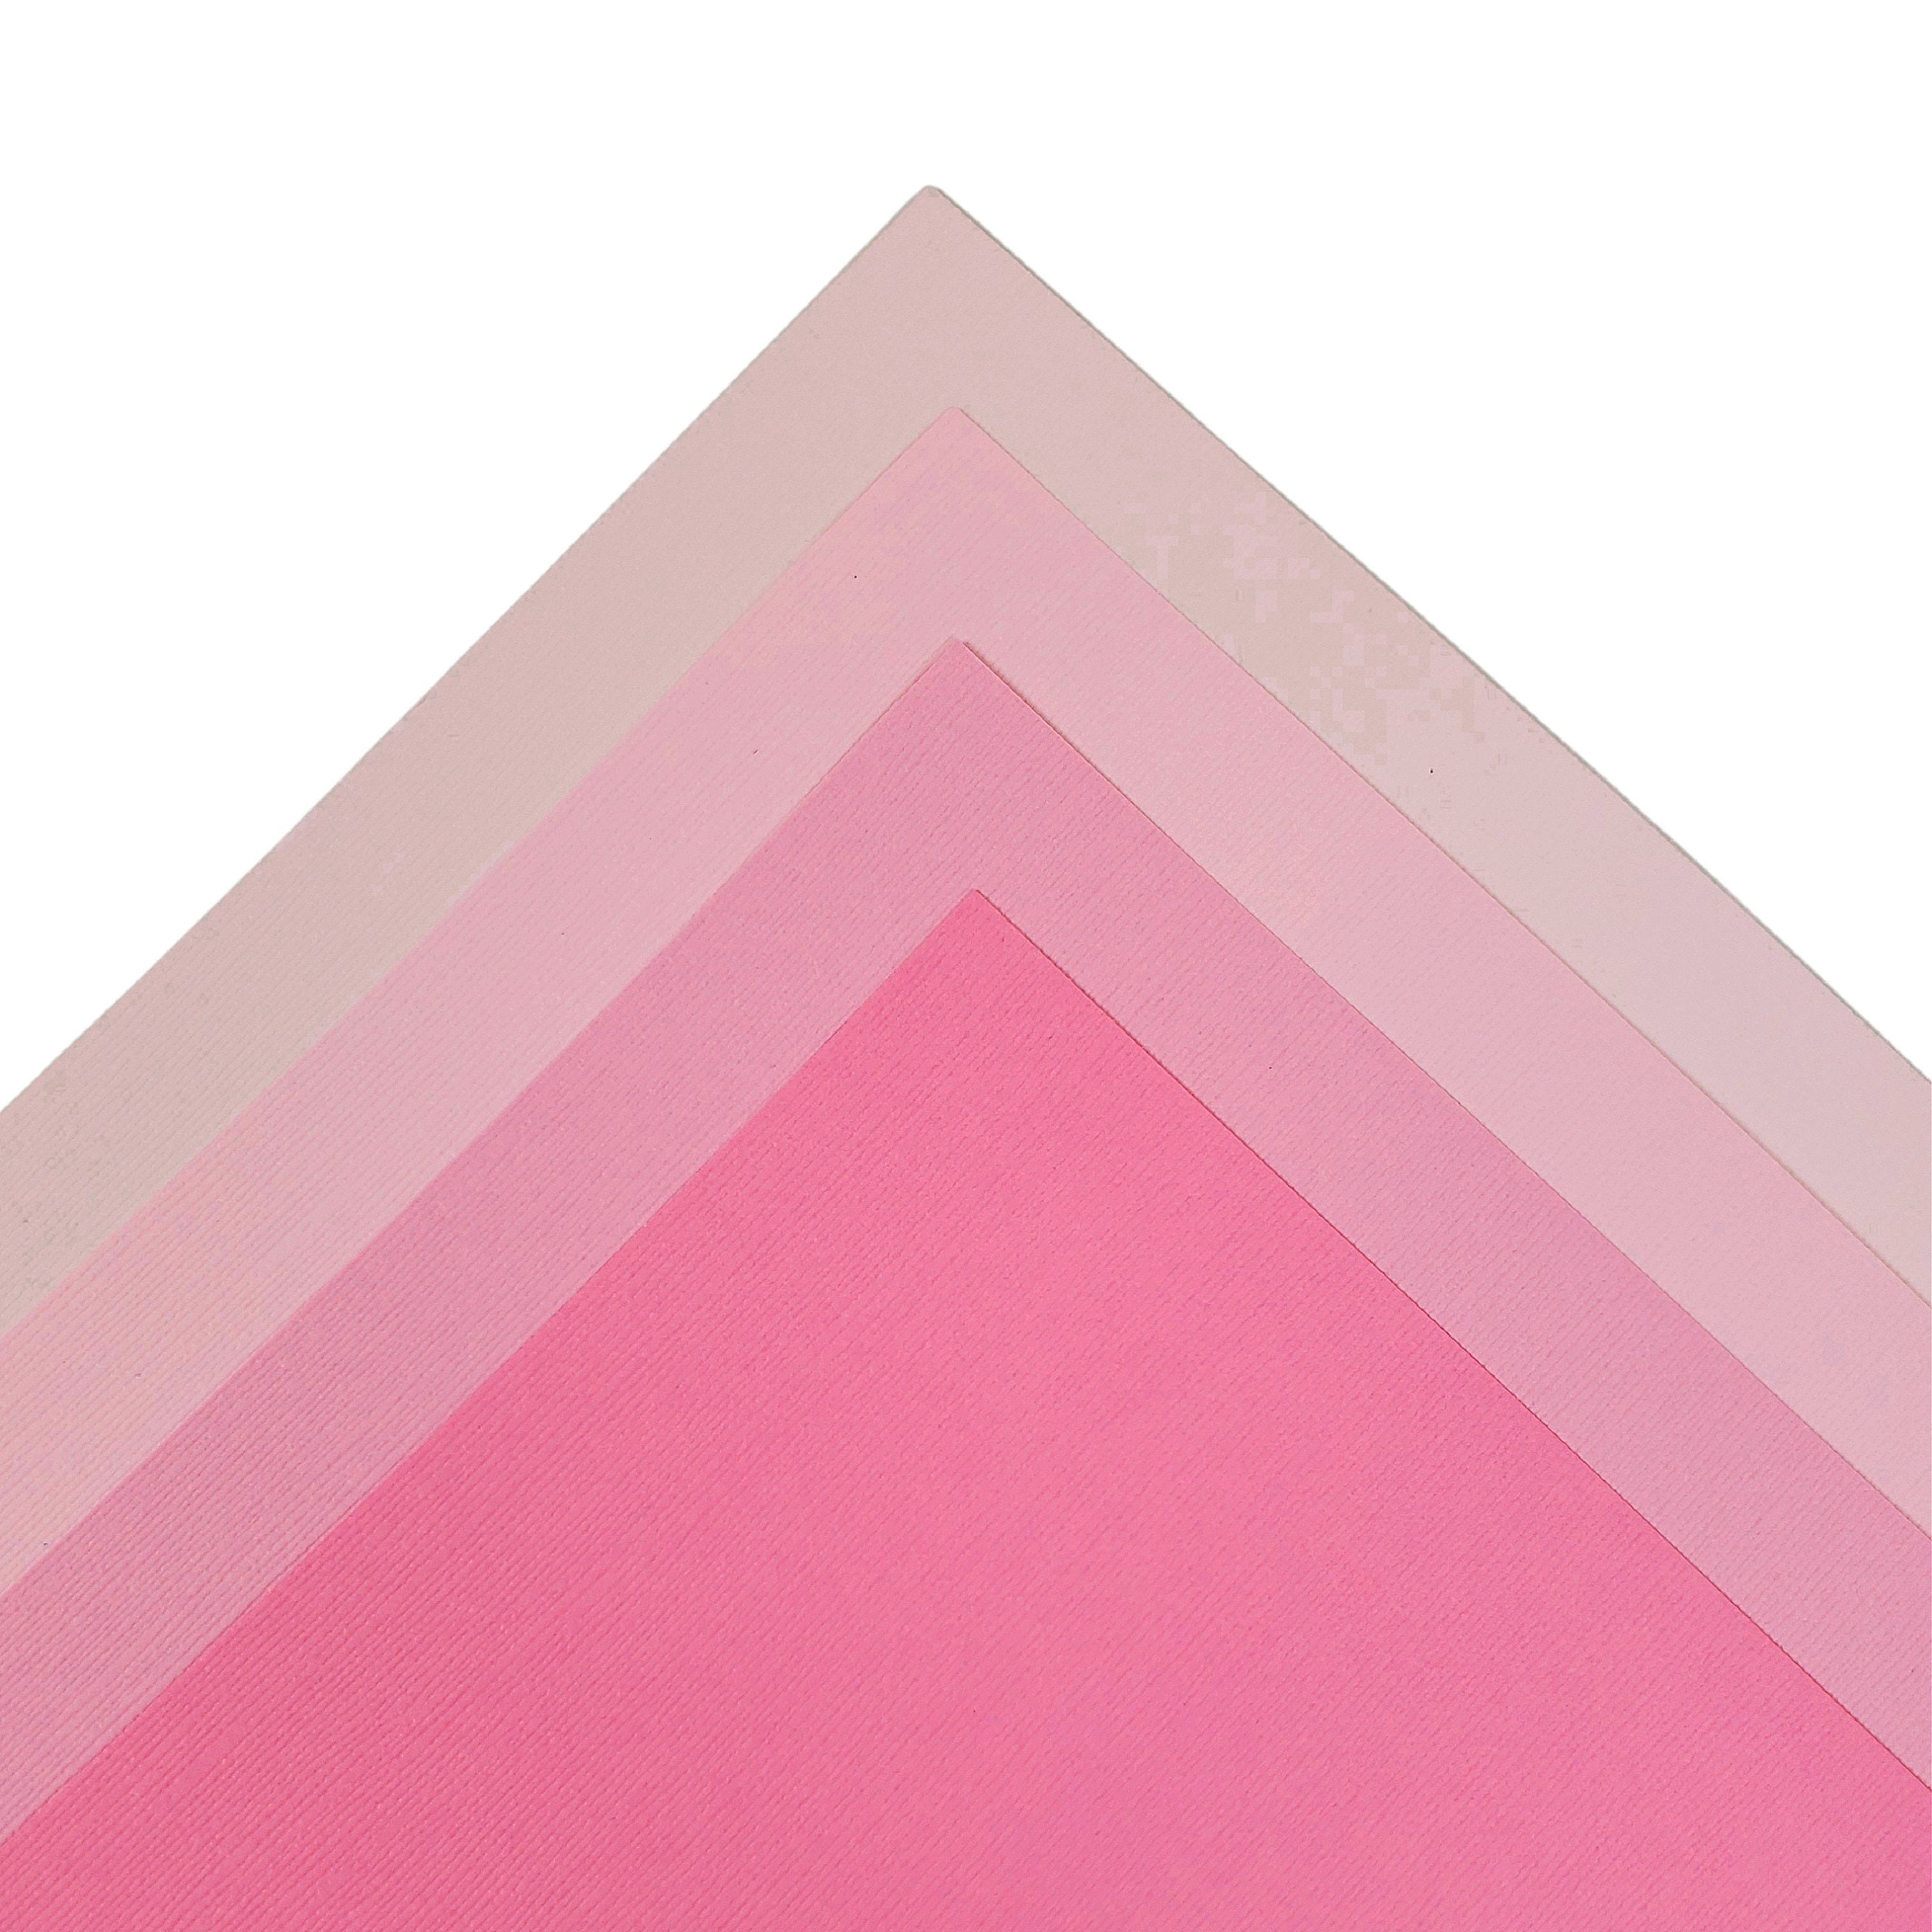  Bazzill BLOSSOM 12x12 Textured Cardstock, 80 lb Blossom Pink  Scrapbook Paper